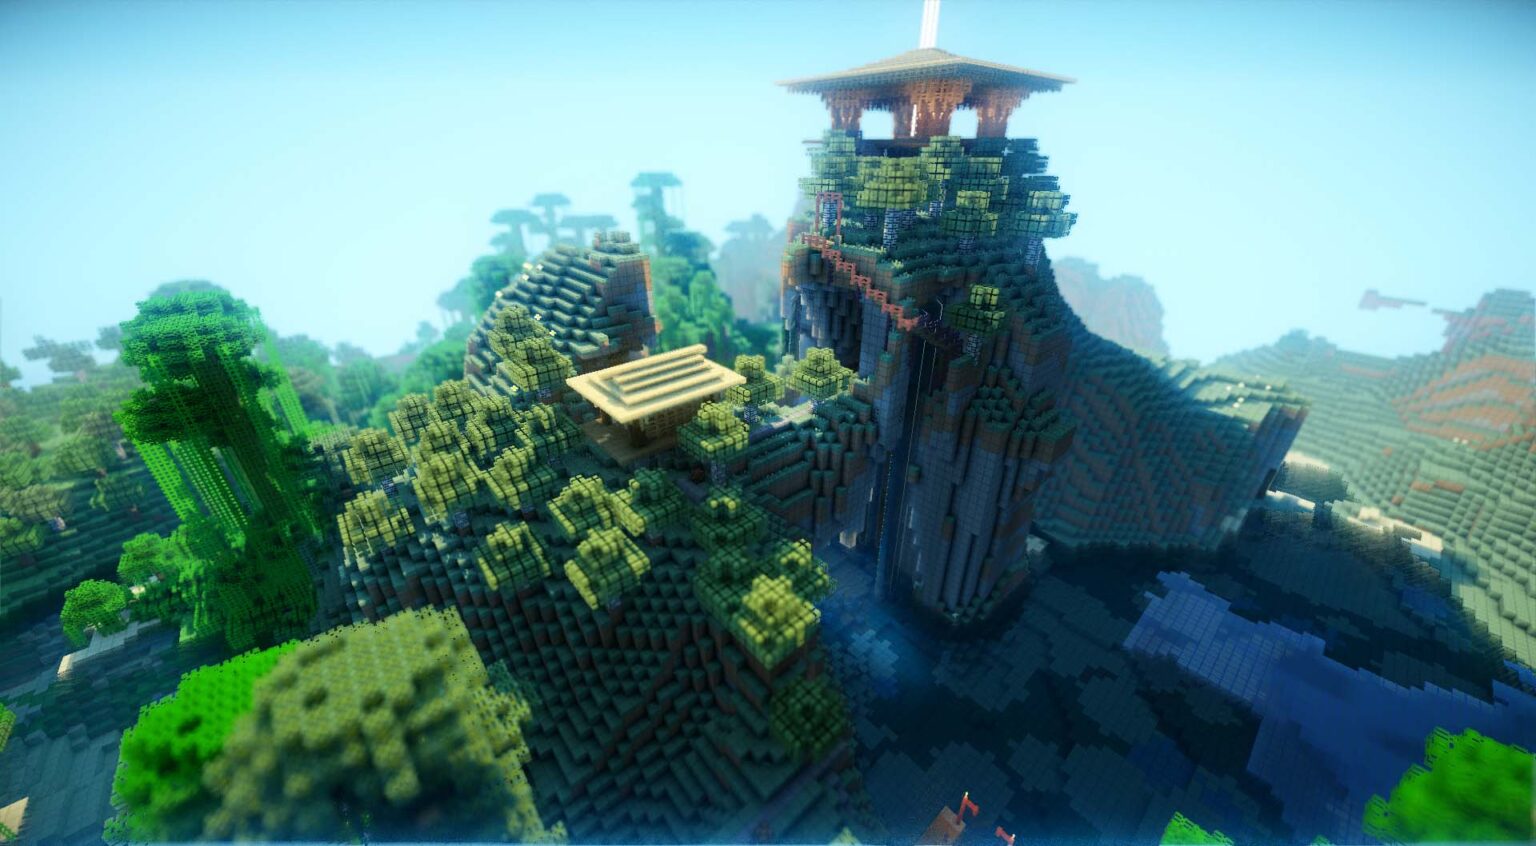 Hình ảnh Minecraft 3D đẹp luôn là nguồn cảm hứng vô tận cho những ai yêu thích game Minecraft. Các khối vuông và môi trường trong game được thiết kế một cách chi tiết và đẹp mắt, mang lại cho người chơi những trải nghiệm tuyệt vời. Nếu bạn muốn thưởng thức những hình ảnh Minecraft 3D đẹp đến ngỡ ngàng, hãy xem những hình ảnh liên quan đến từ khóa này.